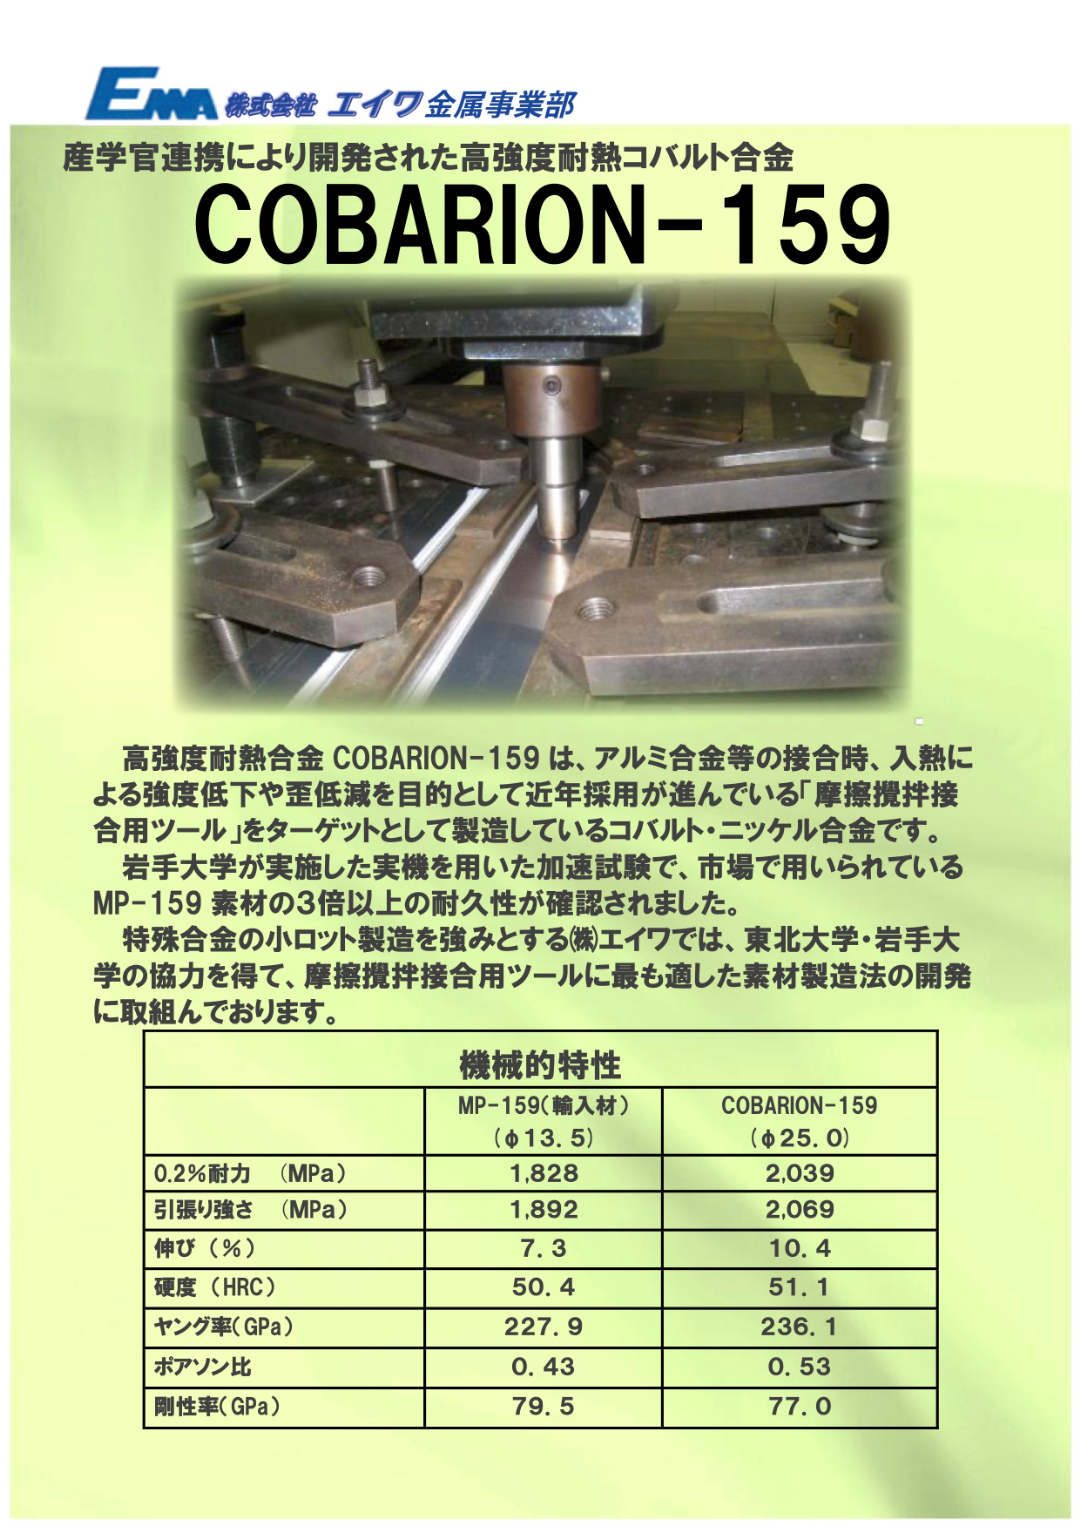 産学官連携により開発された高強度耐熱コバルト合金「COBARION-159」